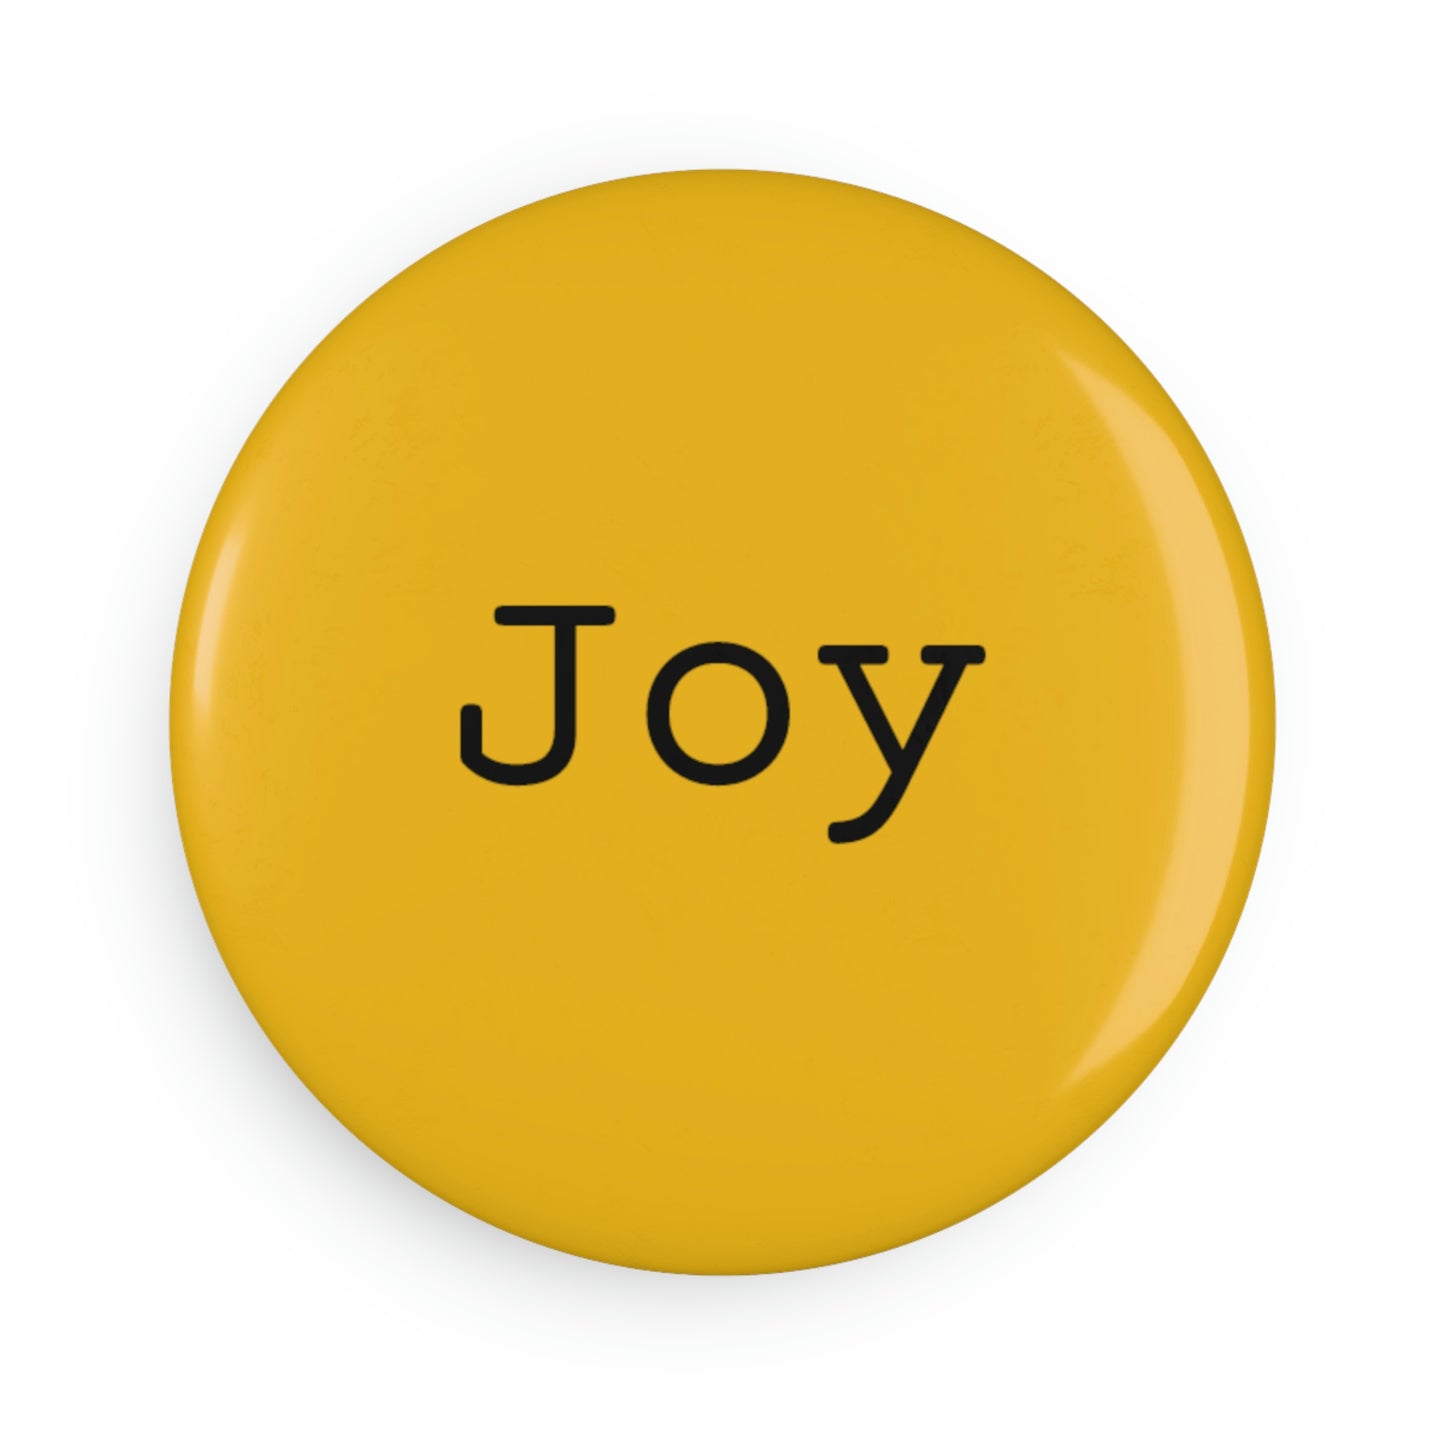 Joy - Button Magnet, Round ~ Sharon Dawn Collection